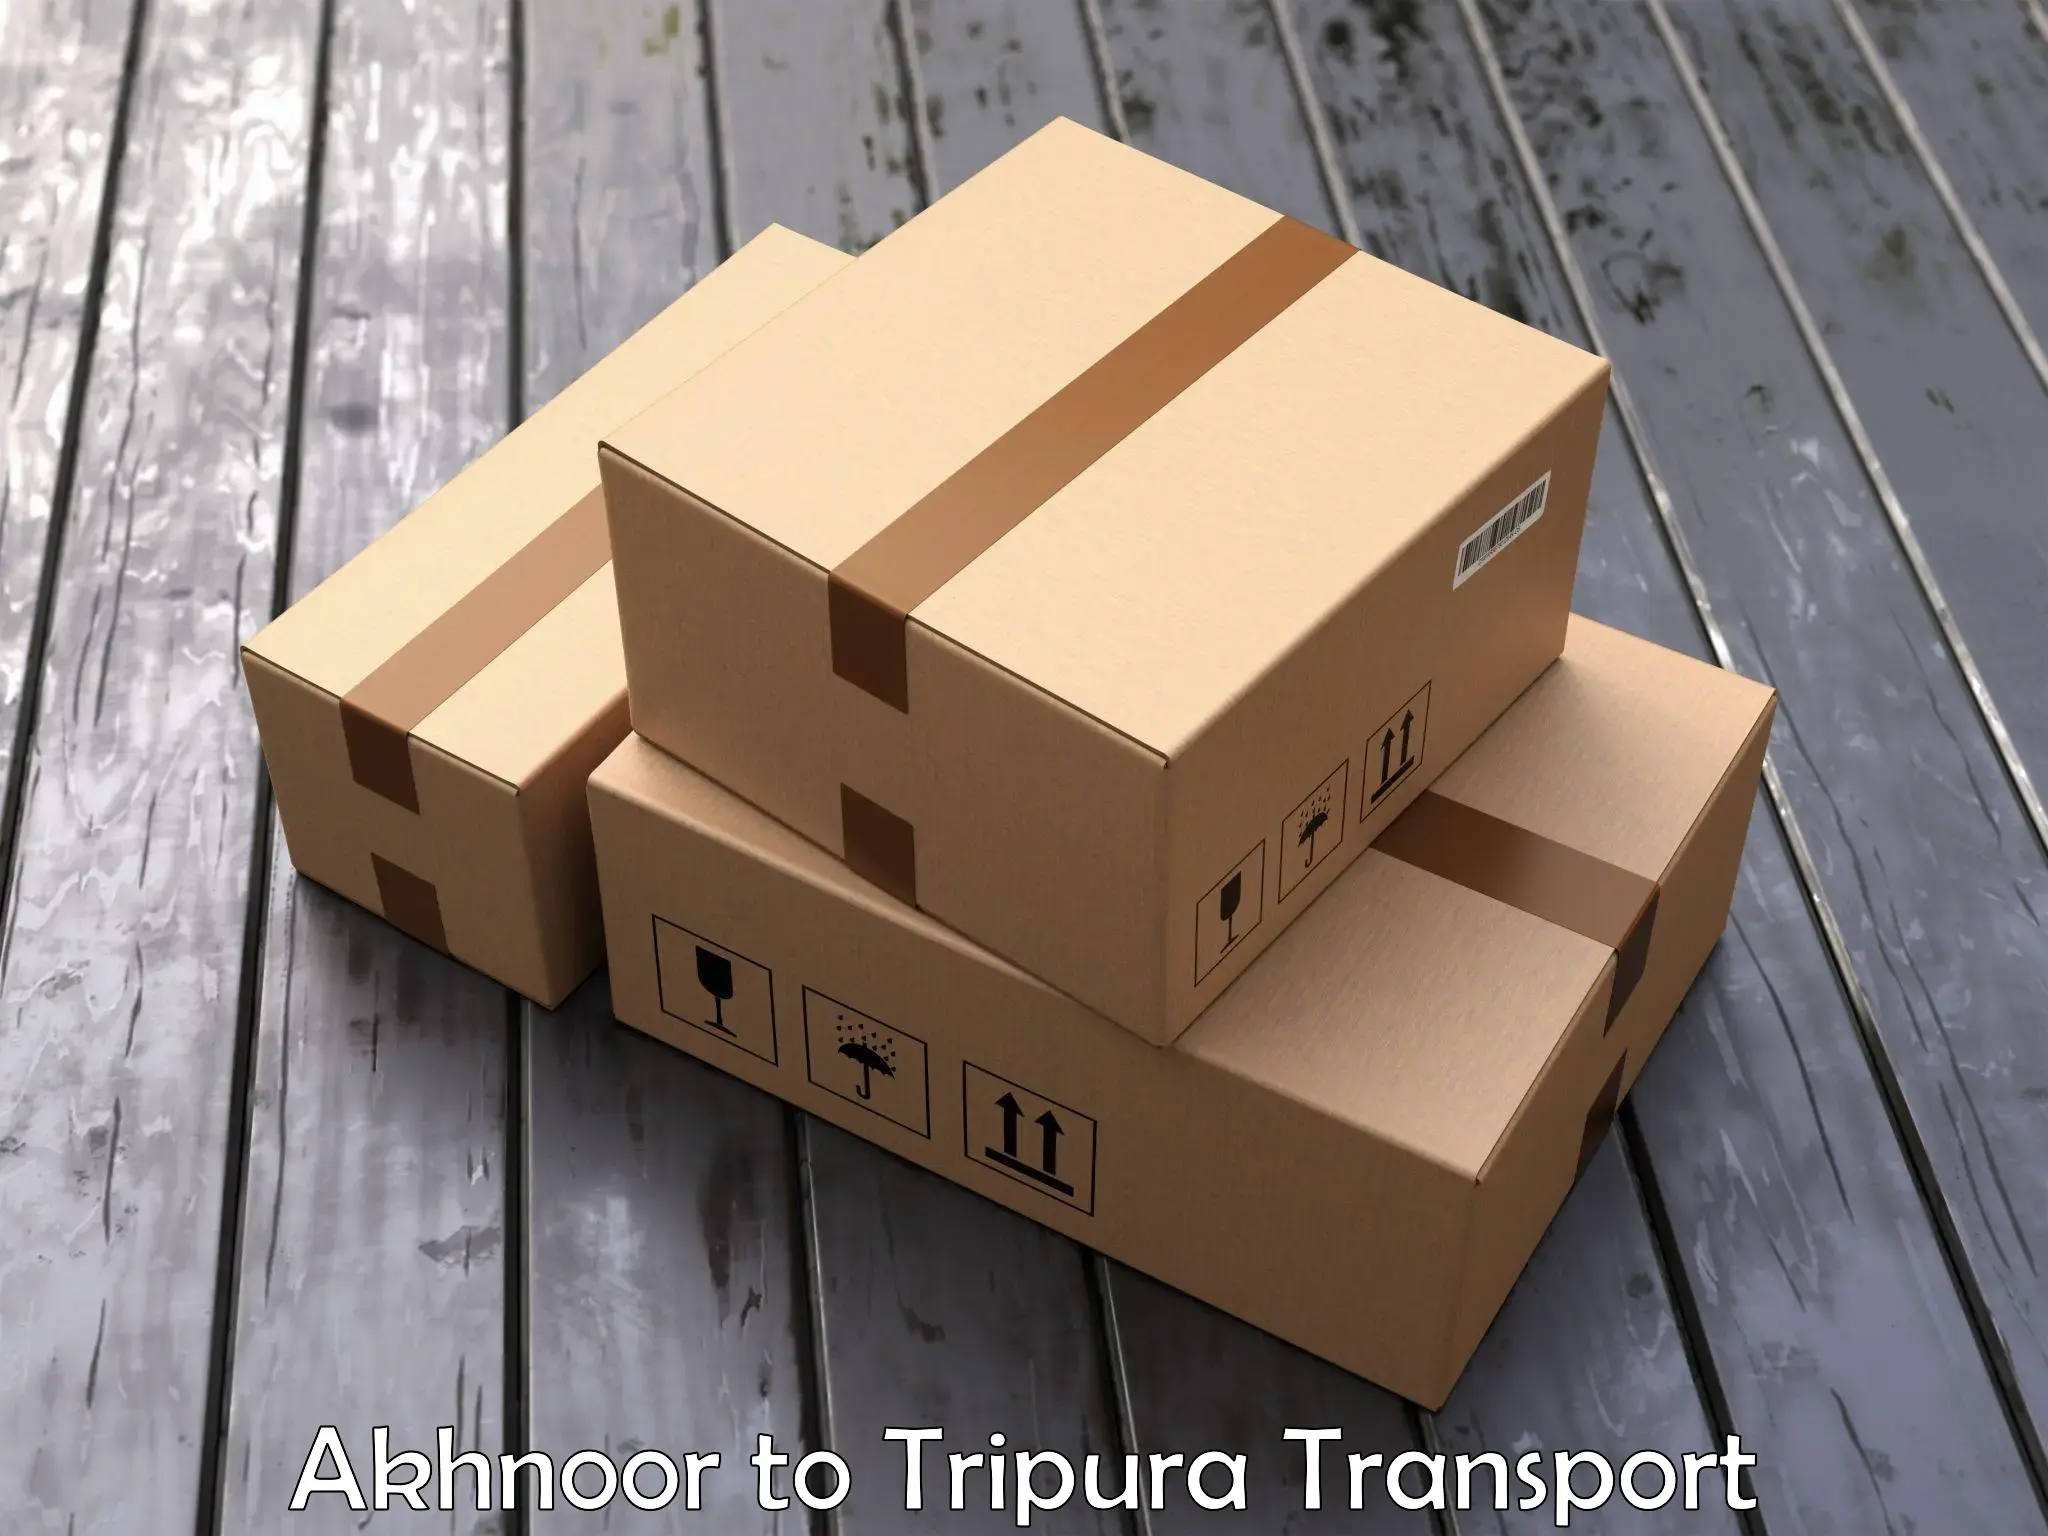 Two wheeler parcel service Akhnoor to Bishalgarh